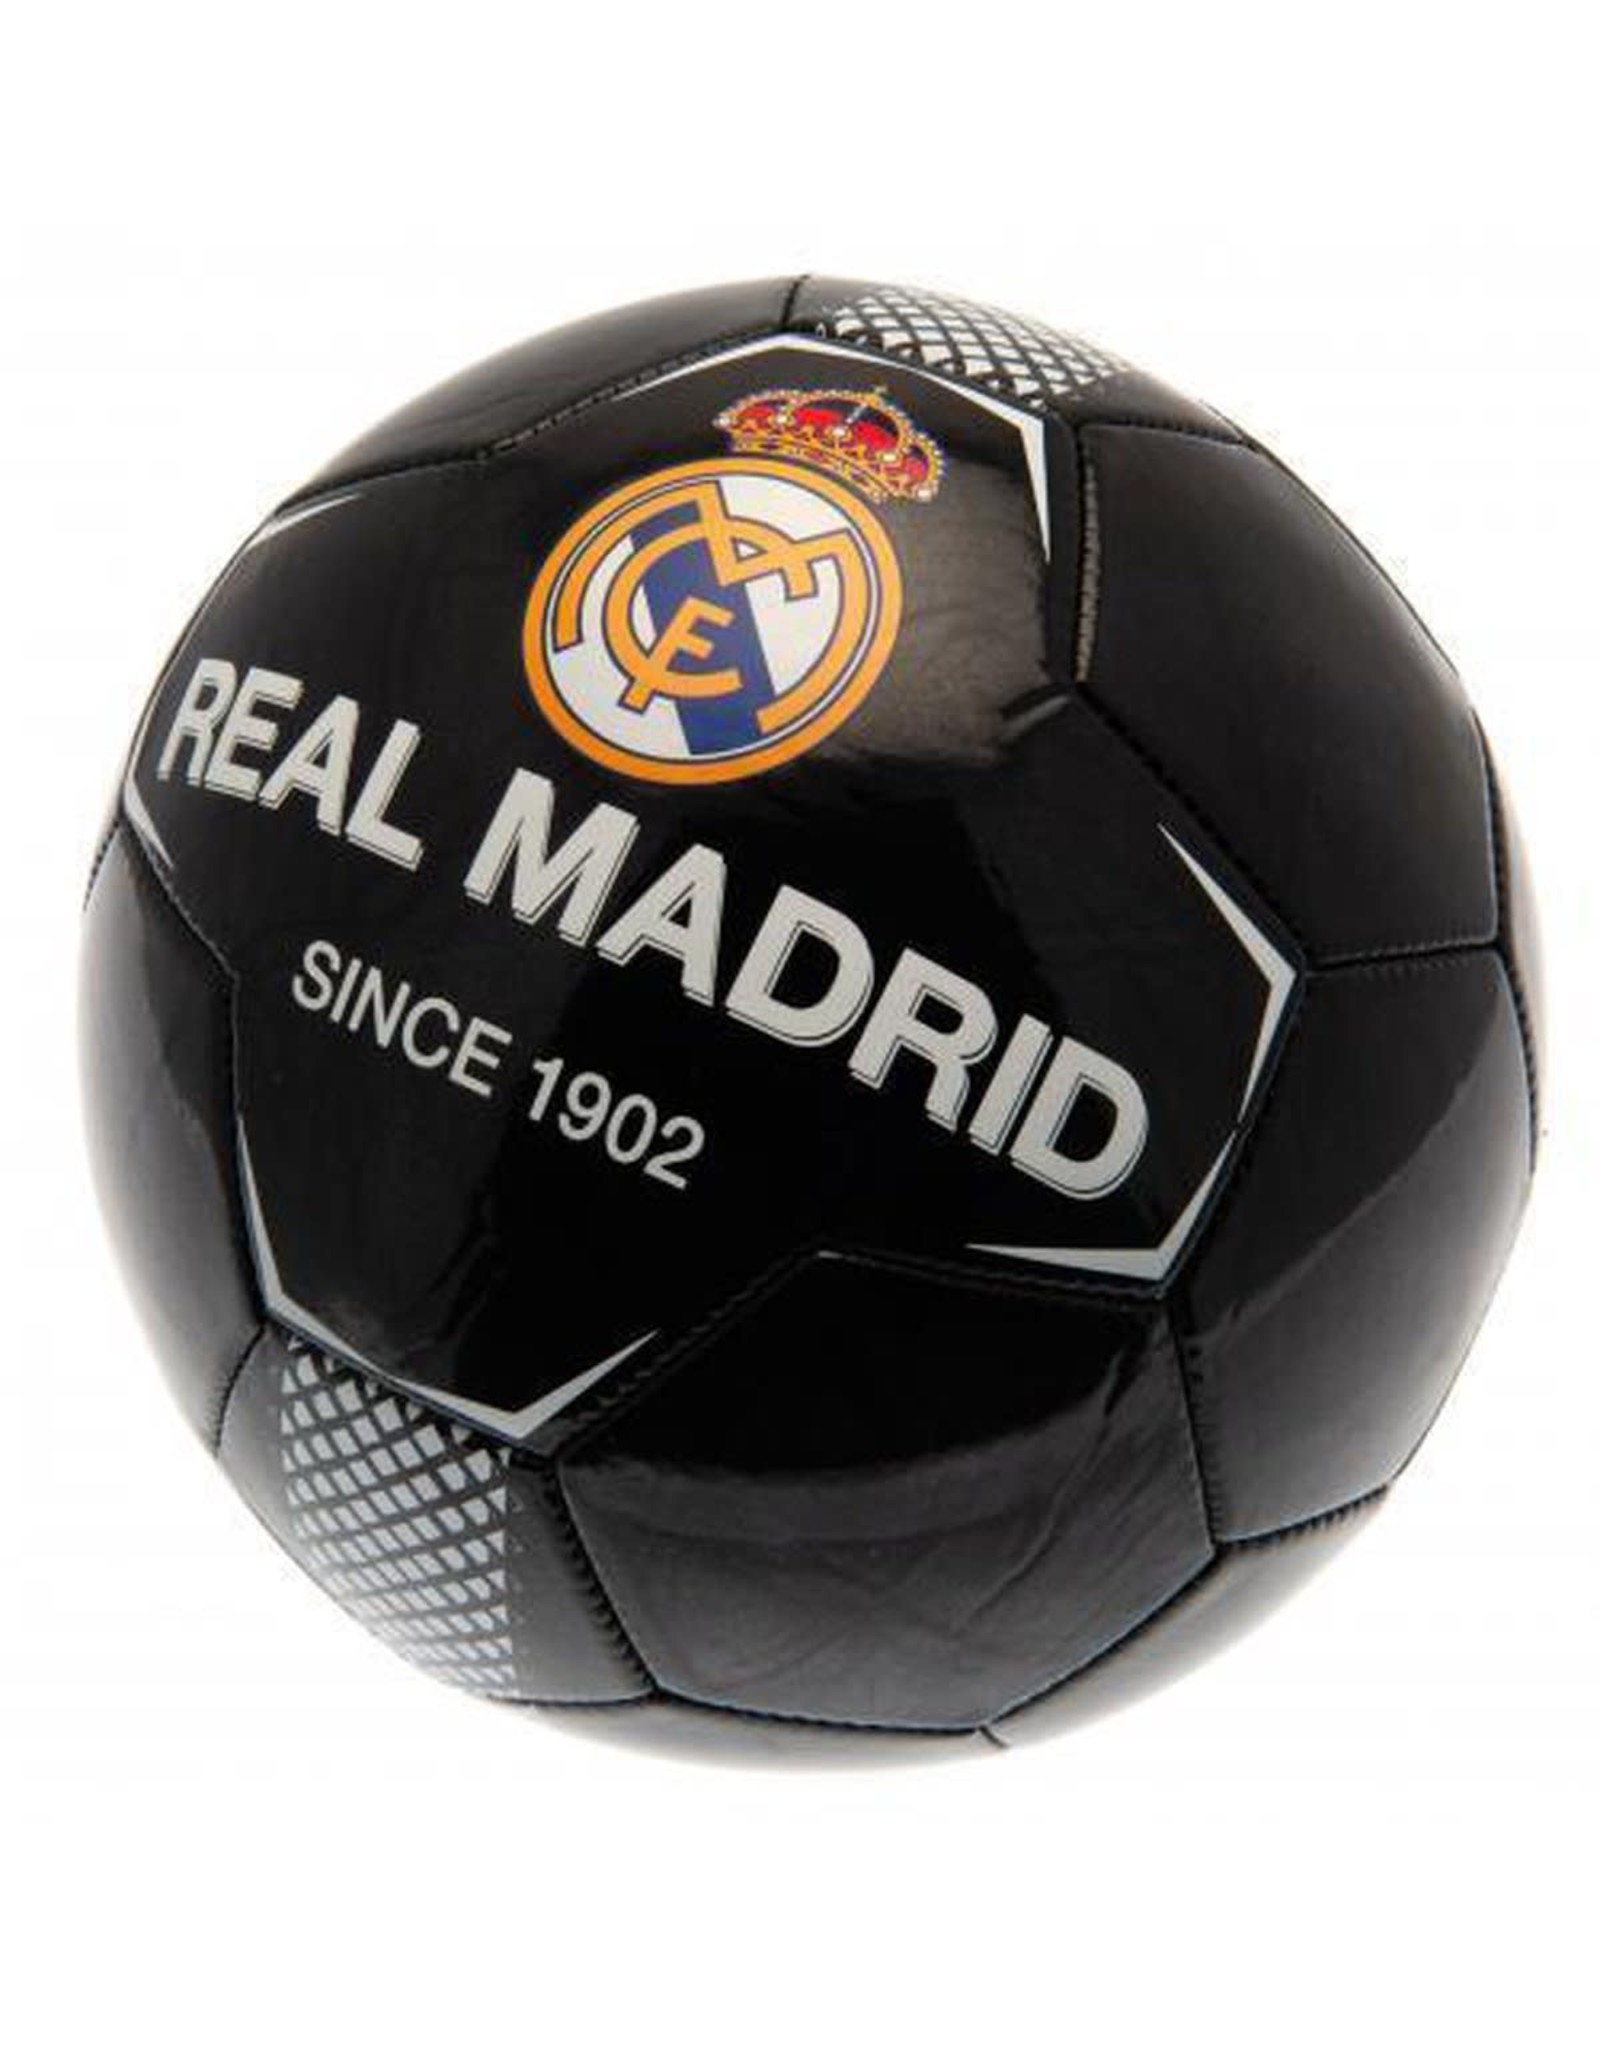 Мячи футбольные москва. Мяч футбольный Реал Мадрид. Мяч футбольный адидас Реал Мадрид. Сувенирный мяч Реал Мадрид. Мяч футбольный Торрес клаб.